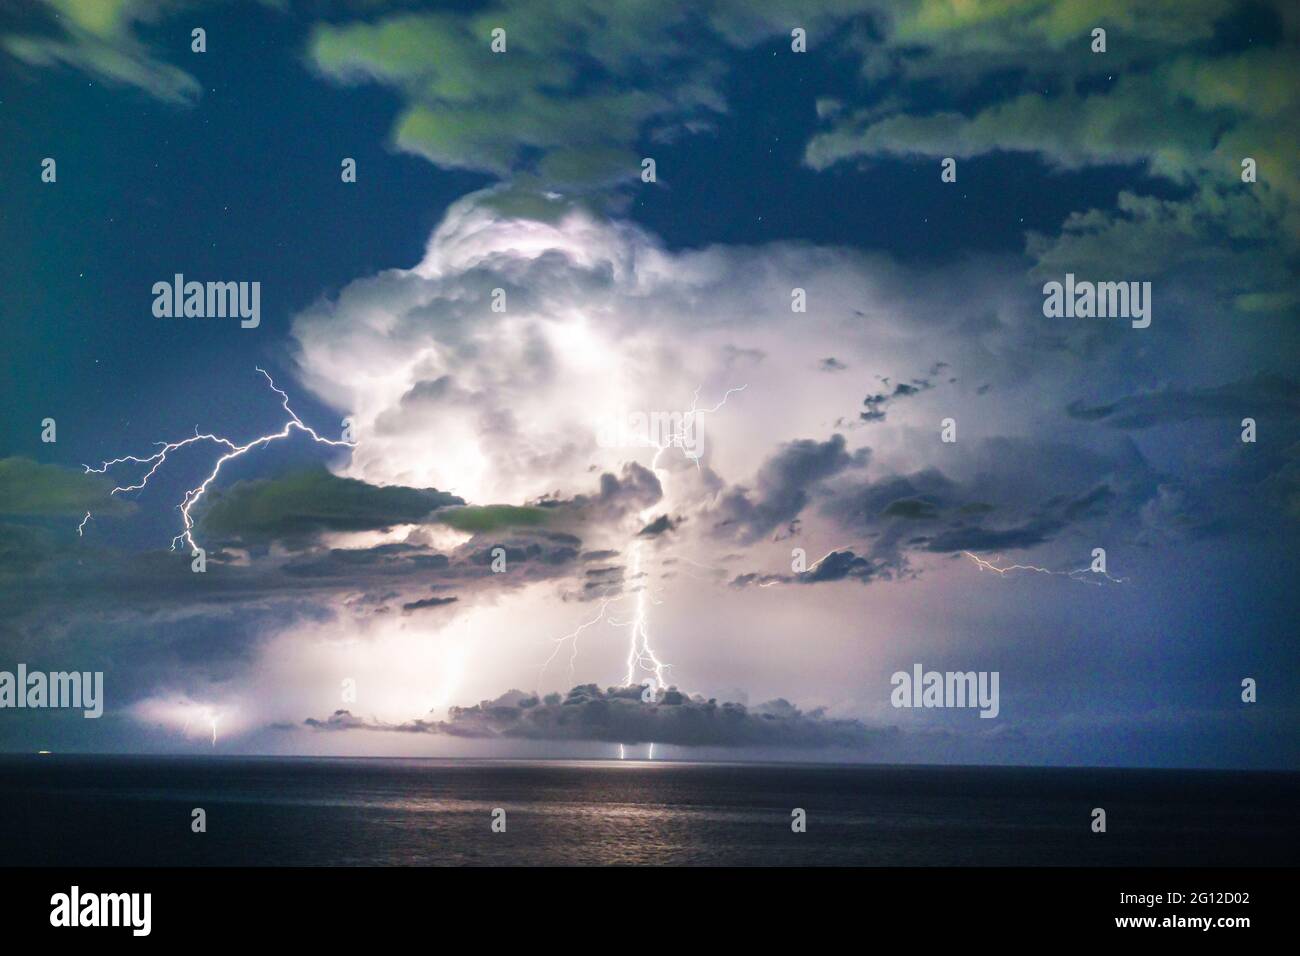 Miami Beach Floride, foudre électrique tempête météo sur l'océan Atlantique nuit d'eau, les visiteurs voyage voyage tourisme touristique repère Landmar Banque D'Images